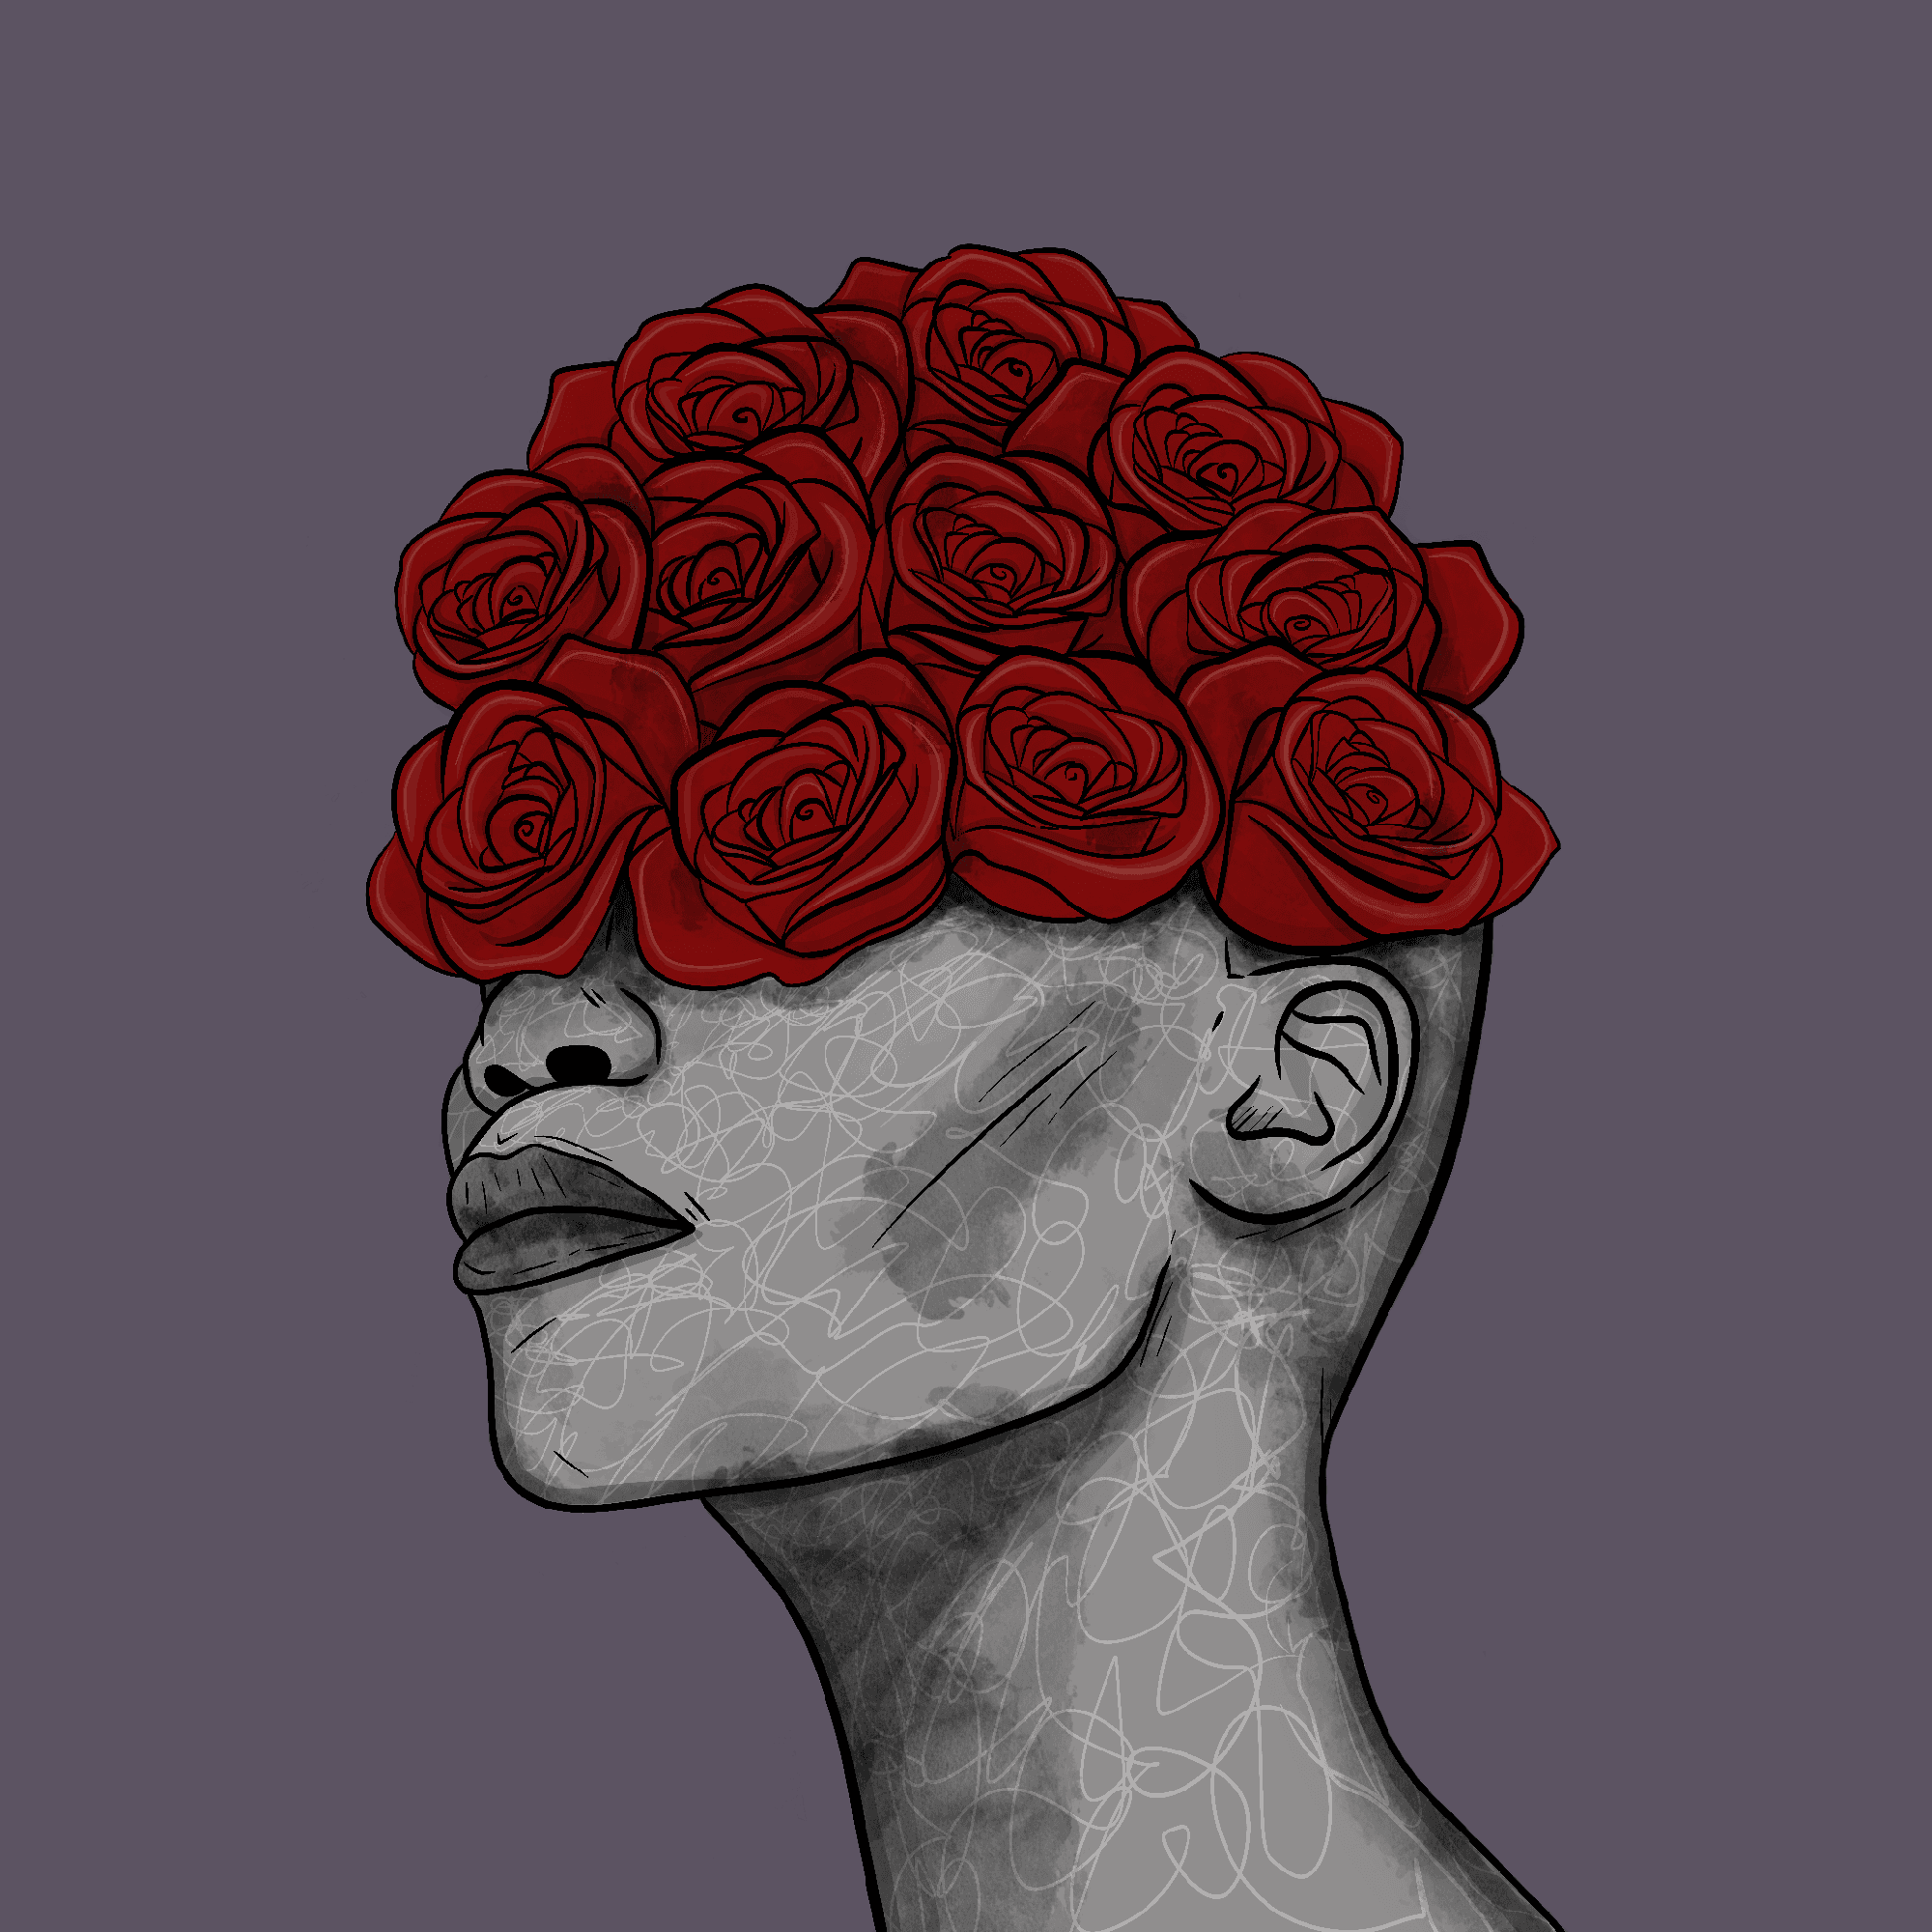 Queen of Roses #83